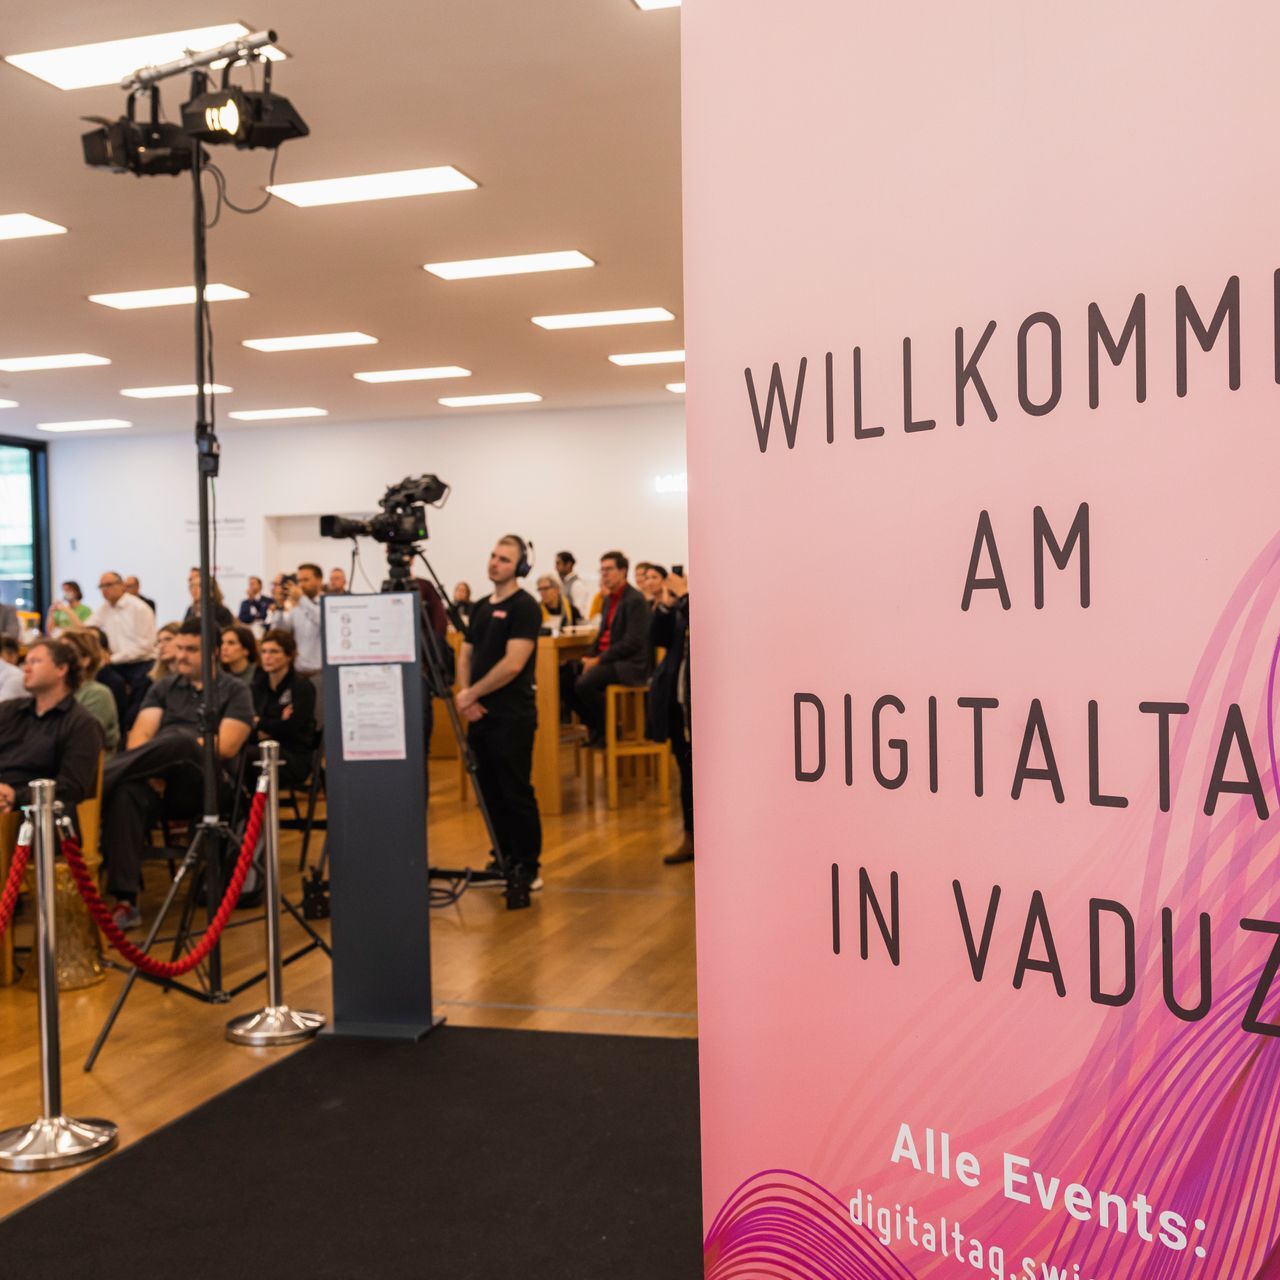 "Digitaltag Vaduz", რომელსაც მიესალმა ლიხტენშტეინის სამთავროს დედაქალაქის Kunstmuseum-მა შაბათს, 6 წლის 2021 ნოემბერს, გამოიწვია საზოგადოებისა და მომხსენებლების ენთუზიაზმი მომდევნო მე-10 დღის "ციფრული დღის შვეიცარიის" ანალოგიით.